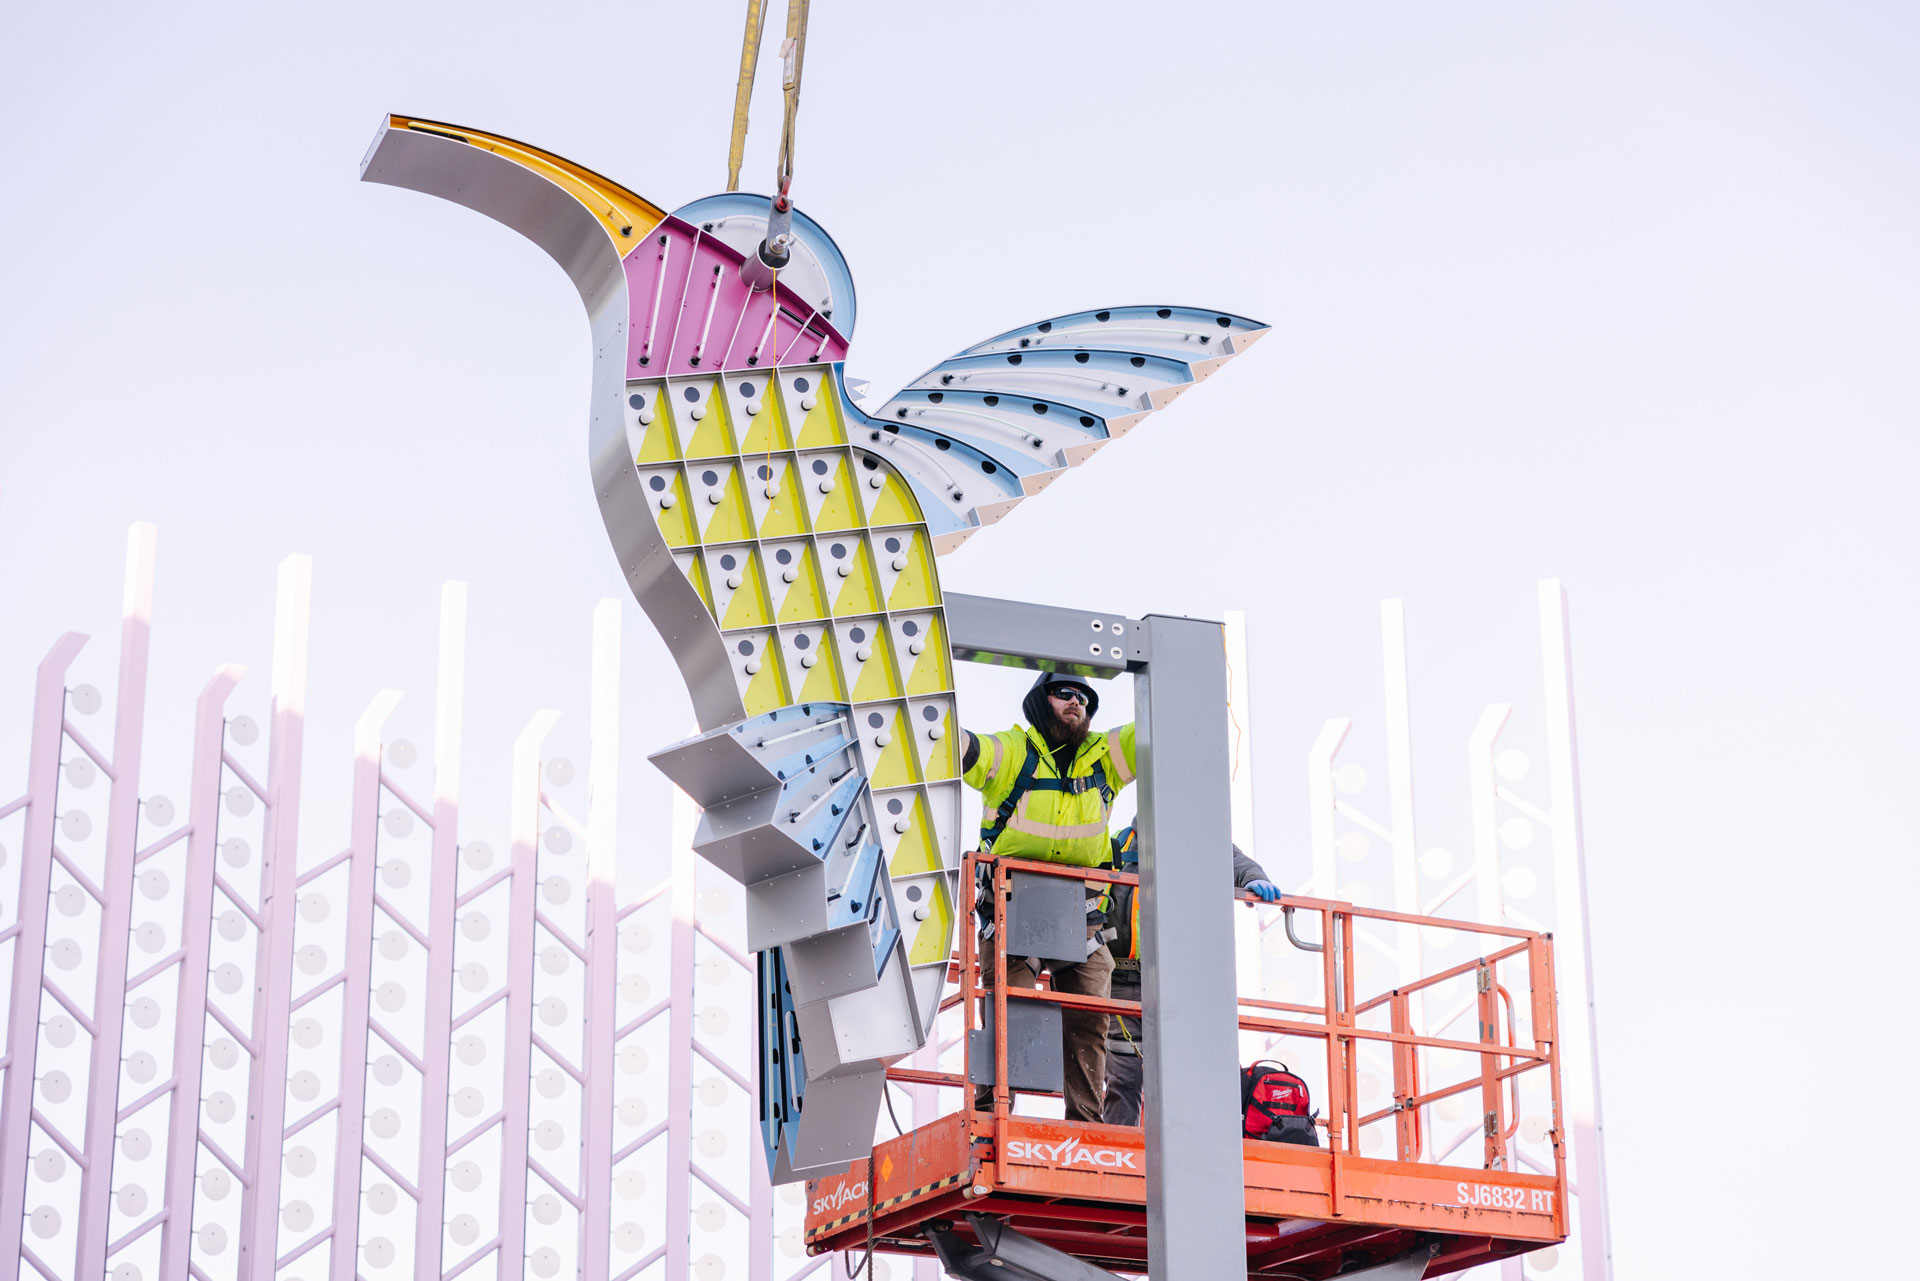 Рабочий на гидравлическом подъемнике наносит последние штрихи на новую художественную инсталляцию в виде разноцветного колибри с неоновой подсветкой в Lynnwood Transit Center.  